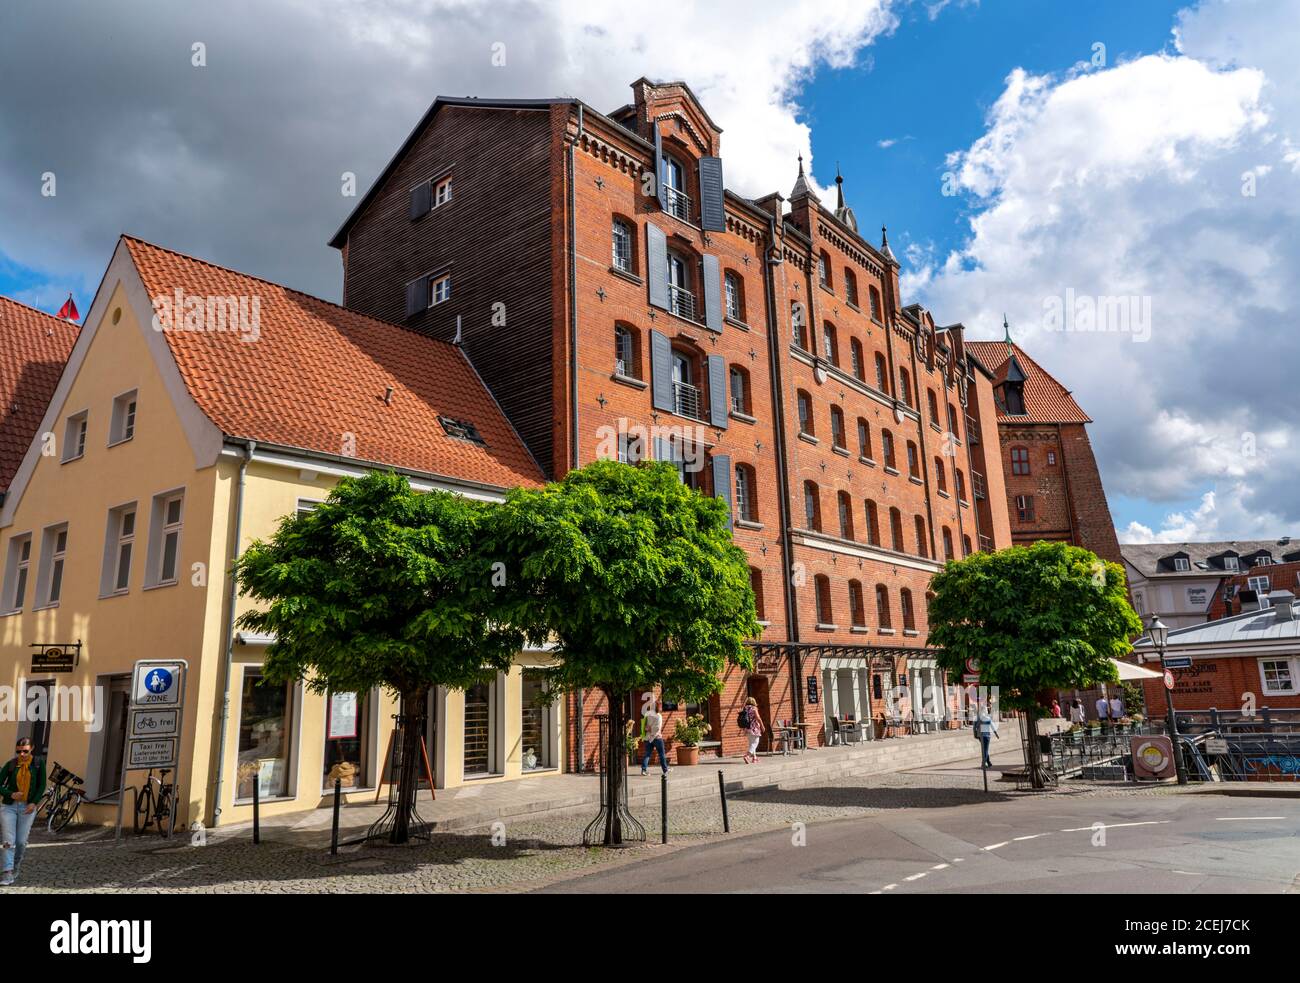 Die Altstadt von Lüneburg, Abtsmühle an der Ilmenau, historisches Hafenviertel, Niedersachsen, Deutschland, Stockfoto